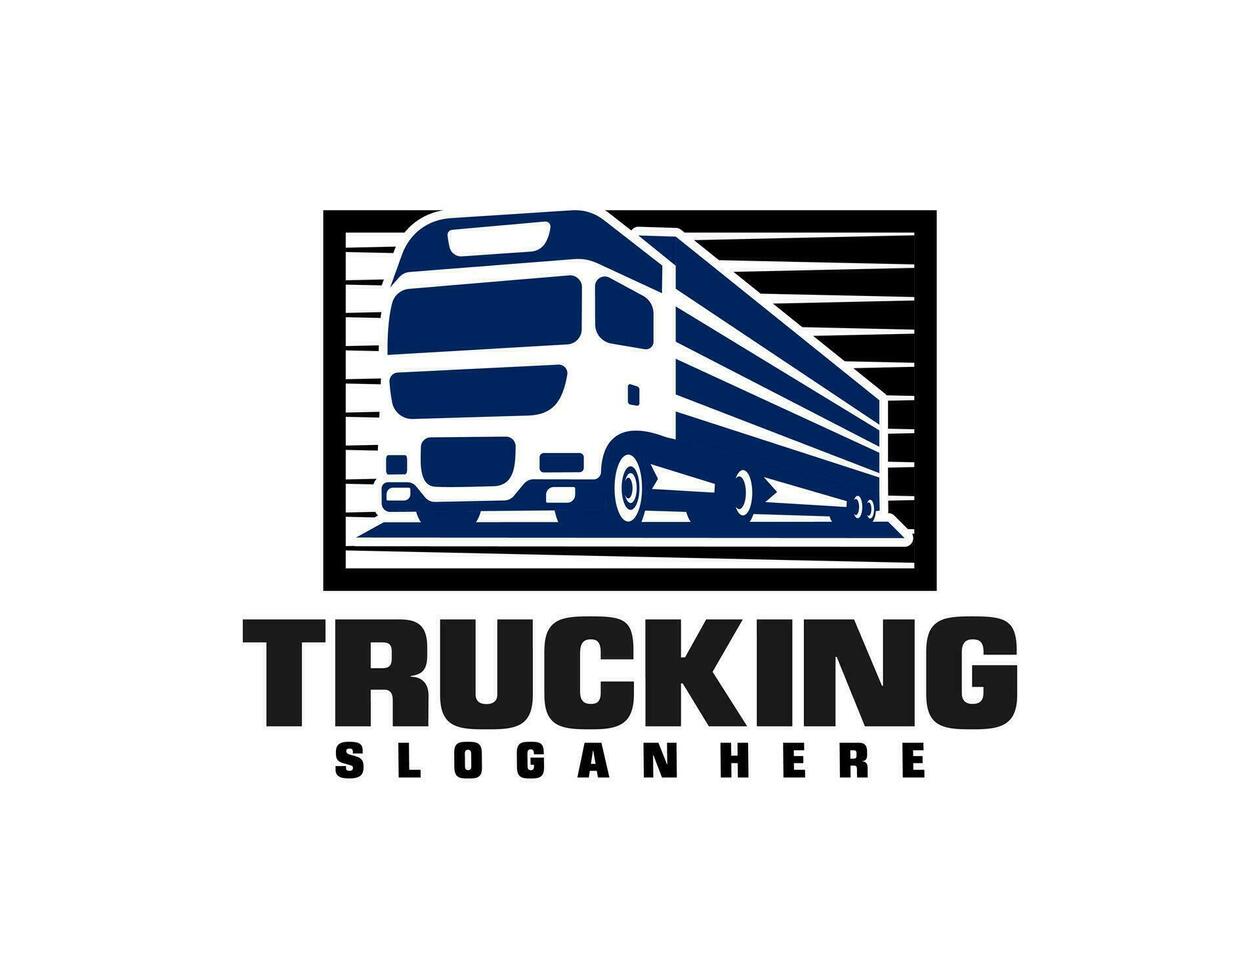 transporte caminhões logística logotipo vetor